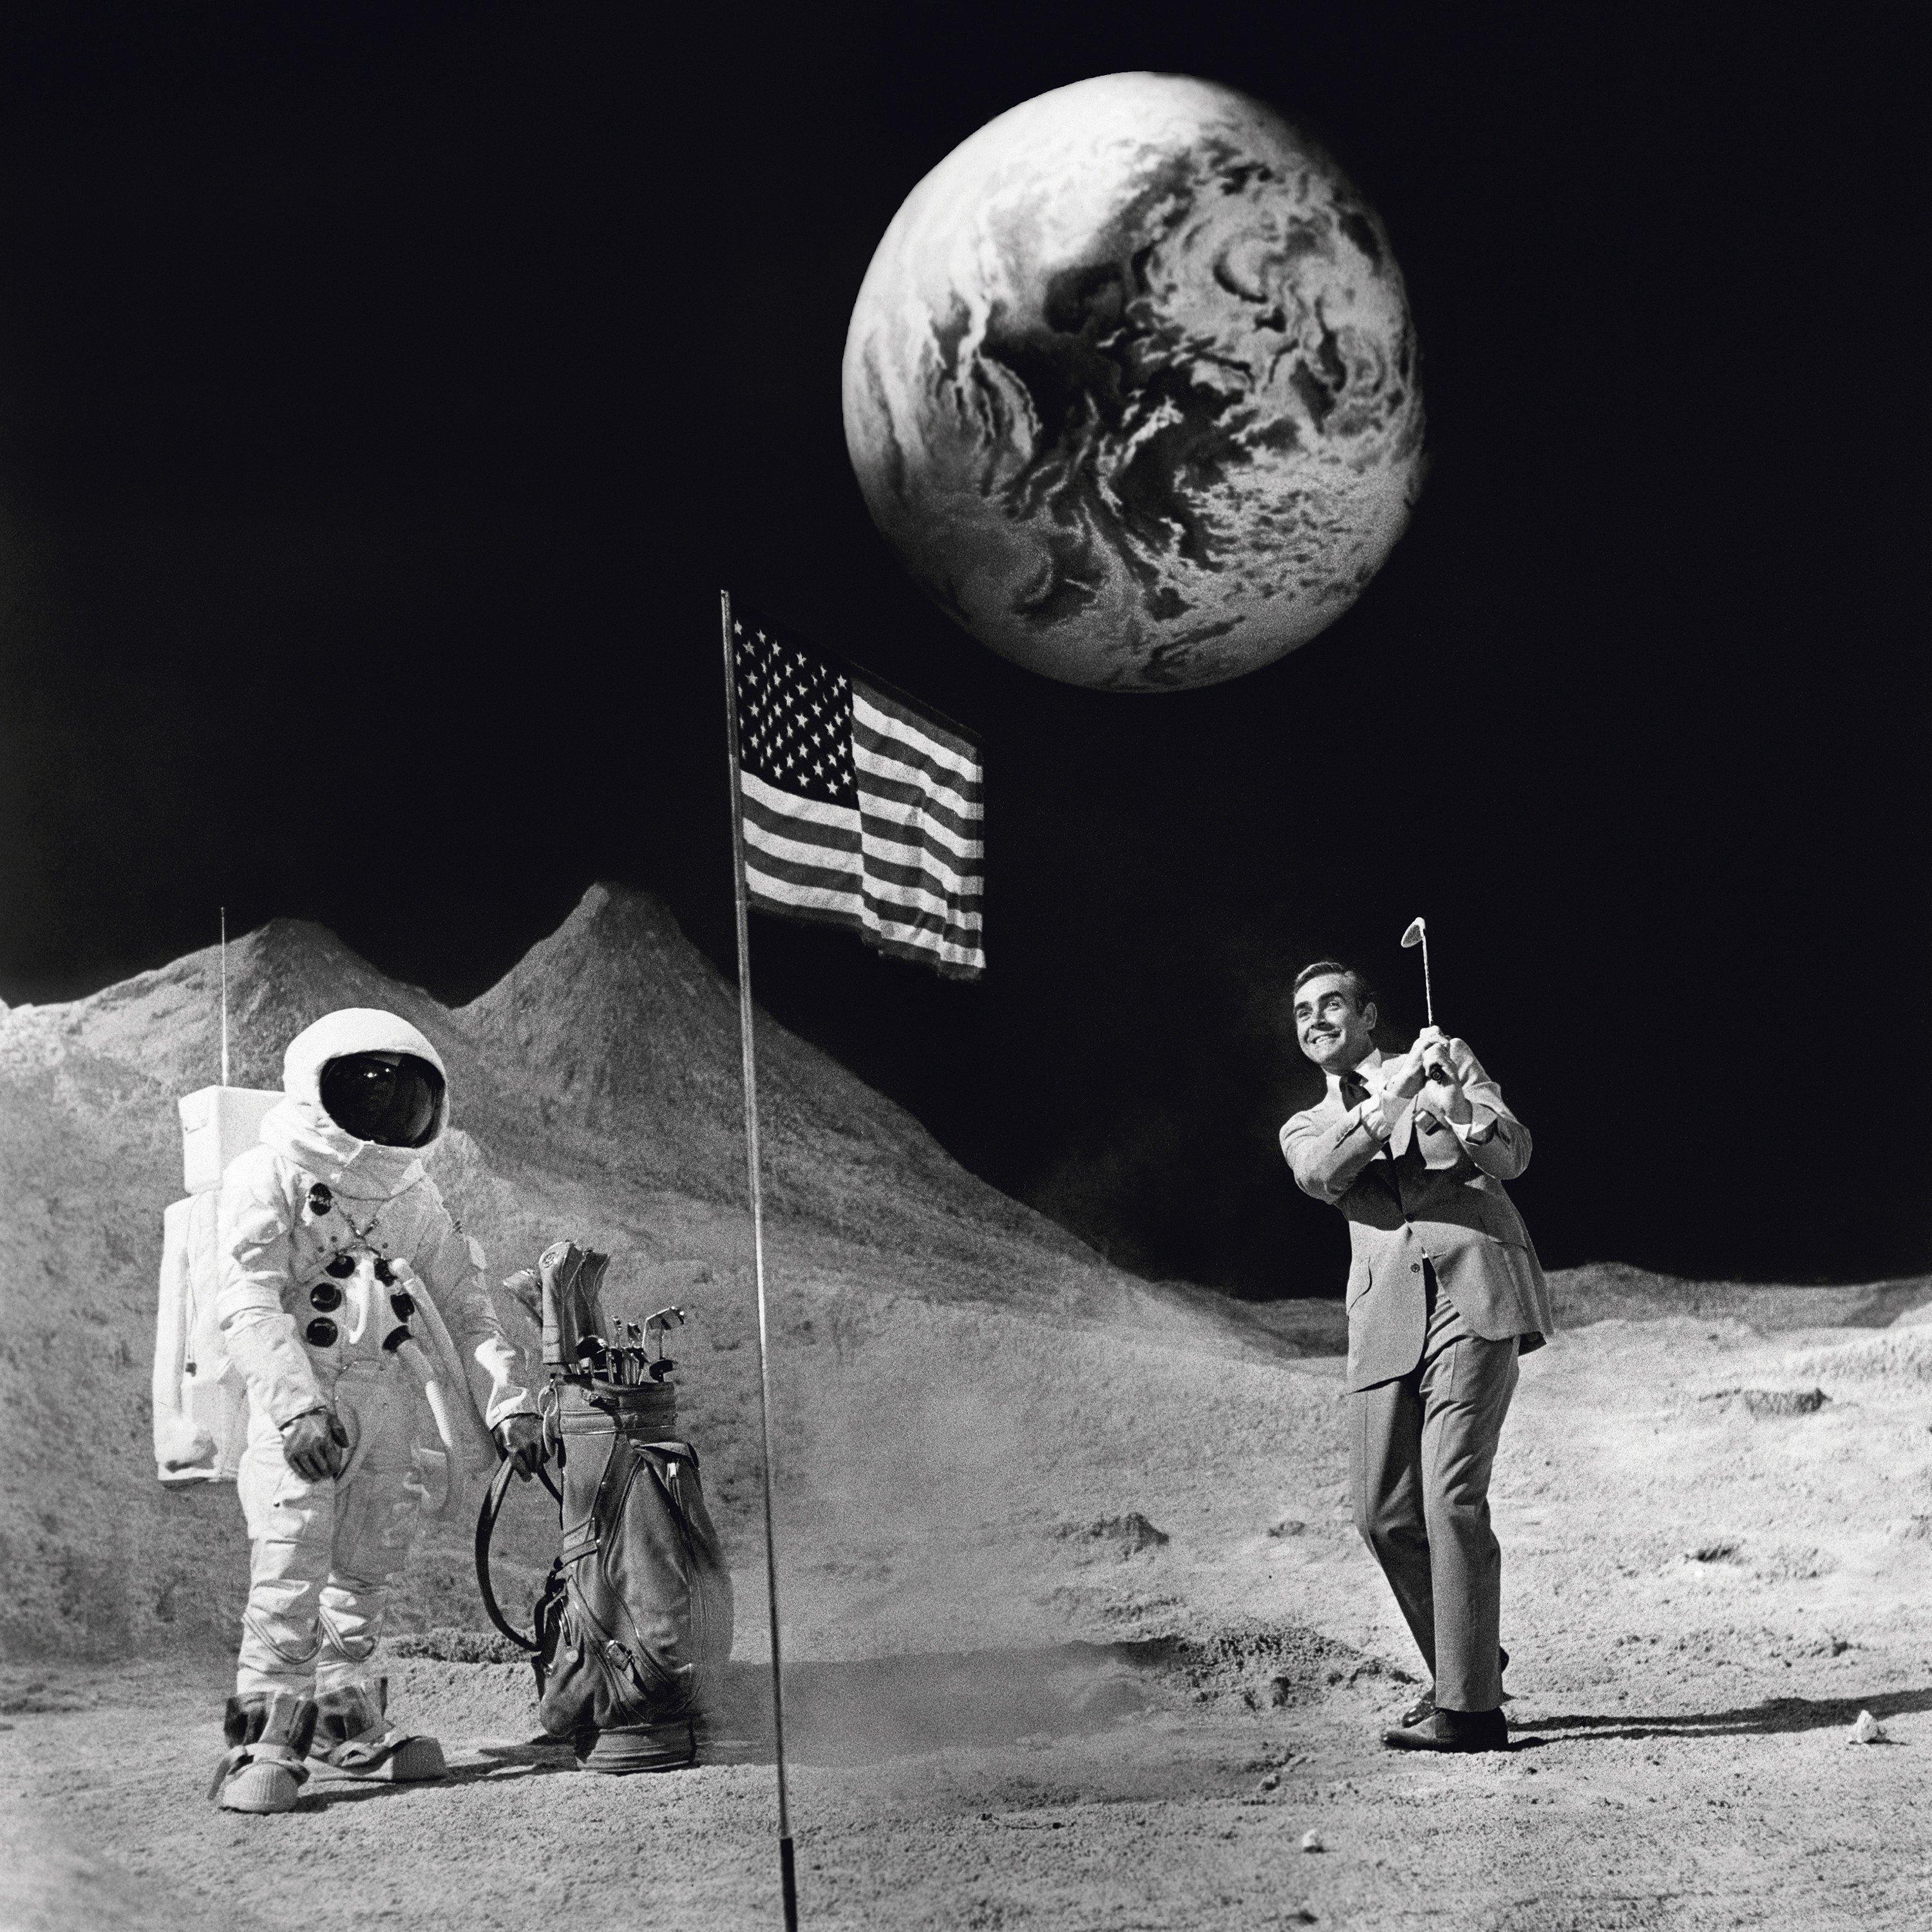 Sean Connery auf dem Mond, 1971
Silber-Gelatine-Druck
Nachlasssignatur gestempelt und nummerierte Auflage von 50 Stück
mit Echtheitszertifikat des Terry O'Neill Estate

In Anlehnung an das berühmte Bild des Astronauten Alan Shepard, der auf dem Mond